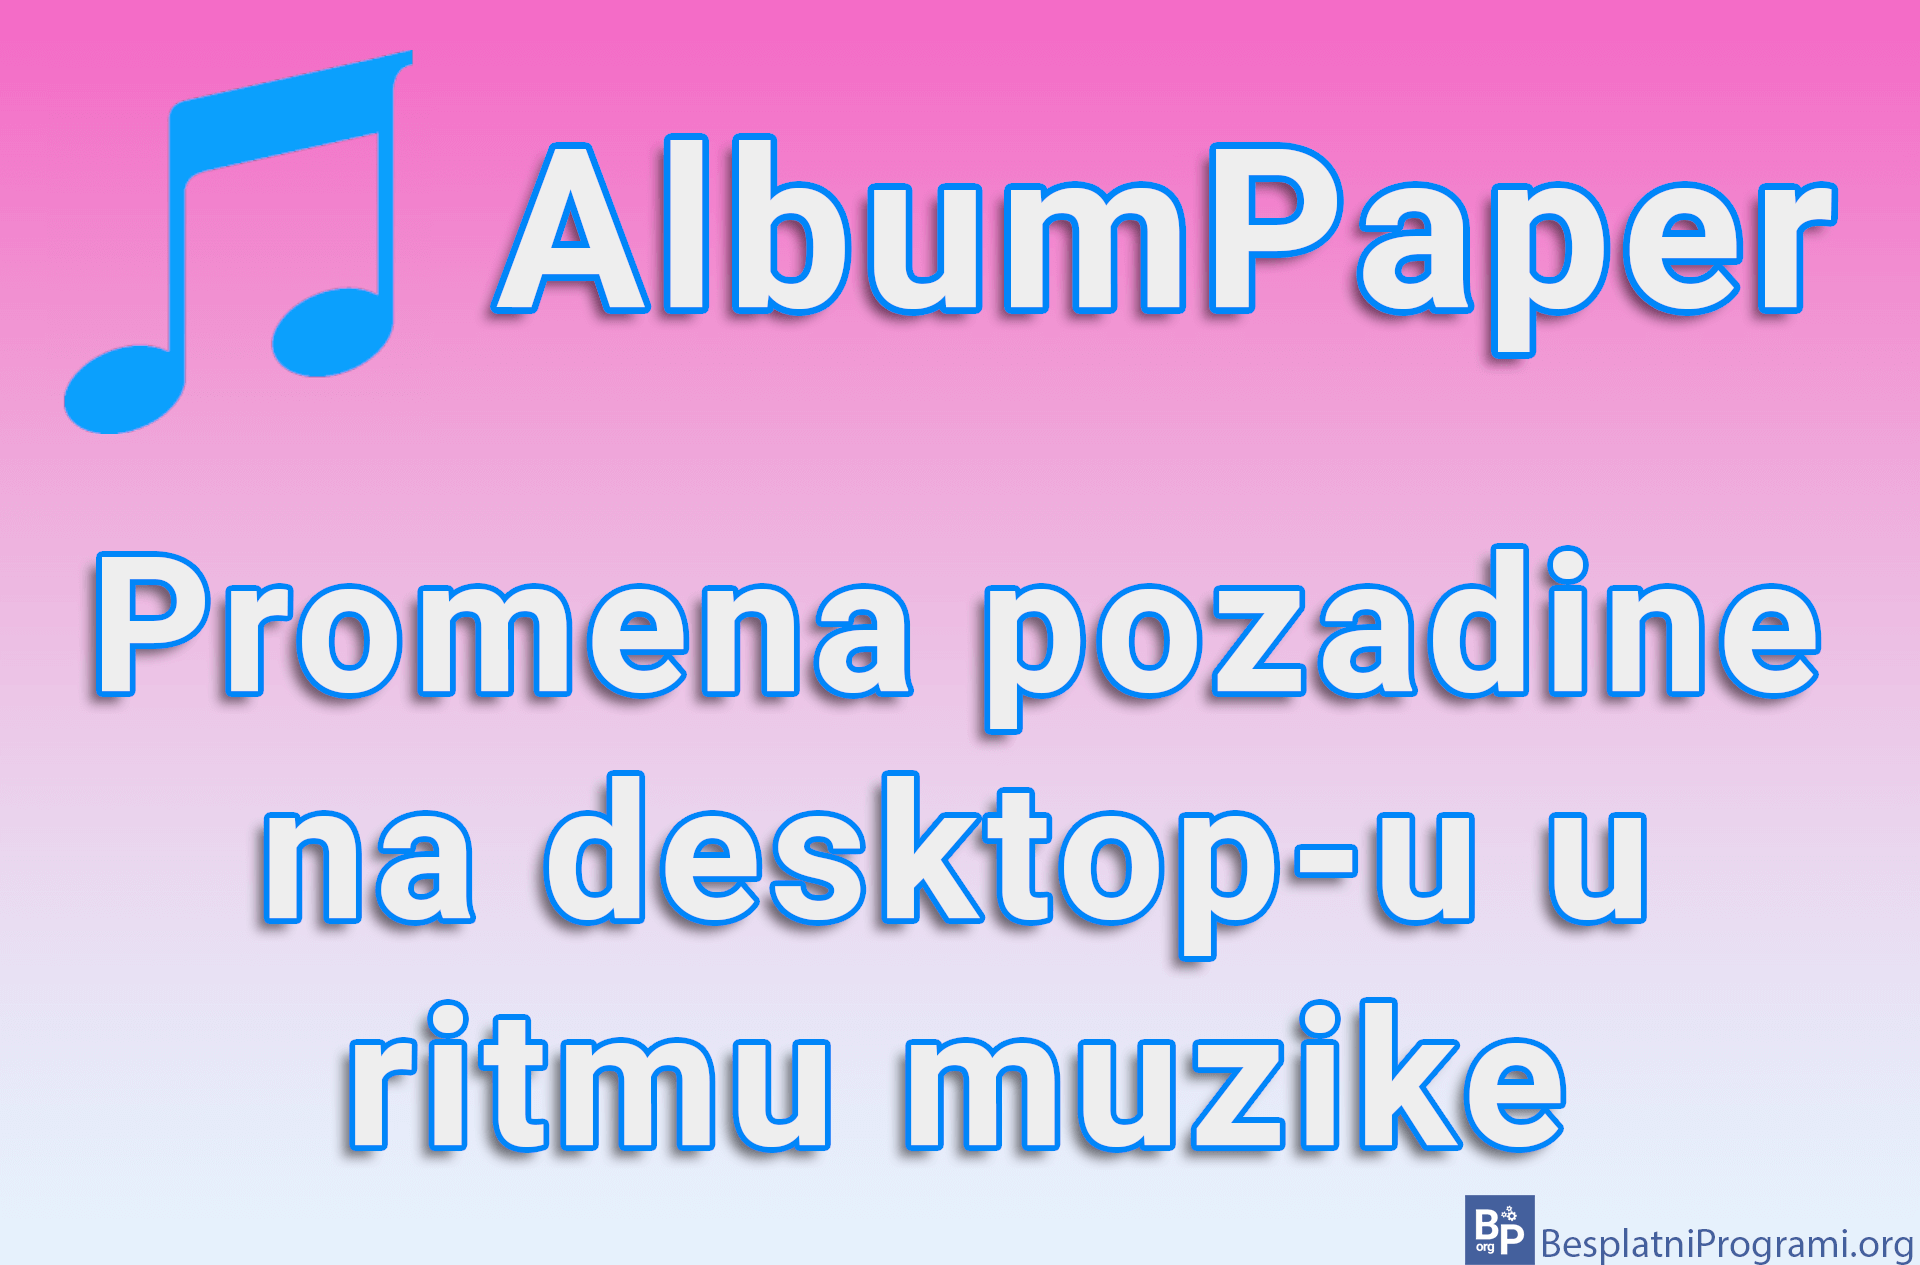 AlbumPaper – Promena pozadine na desktop-u u ritmu muzike